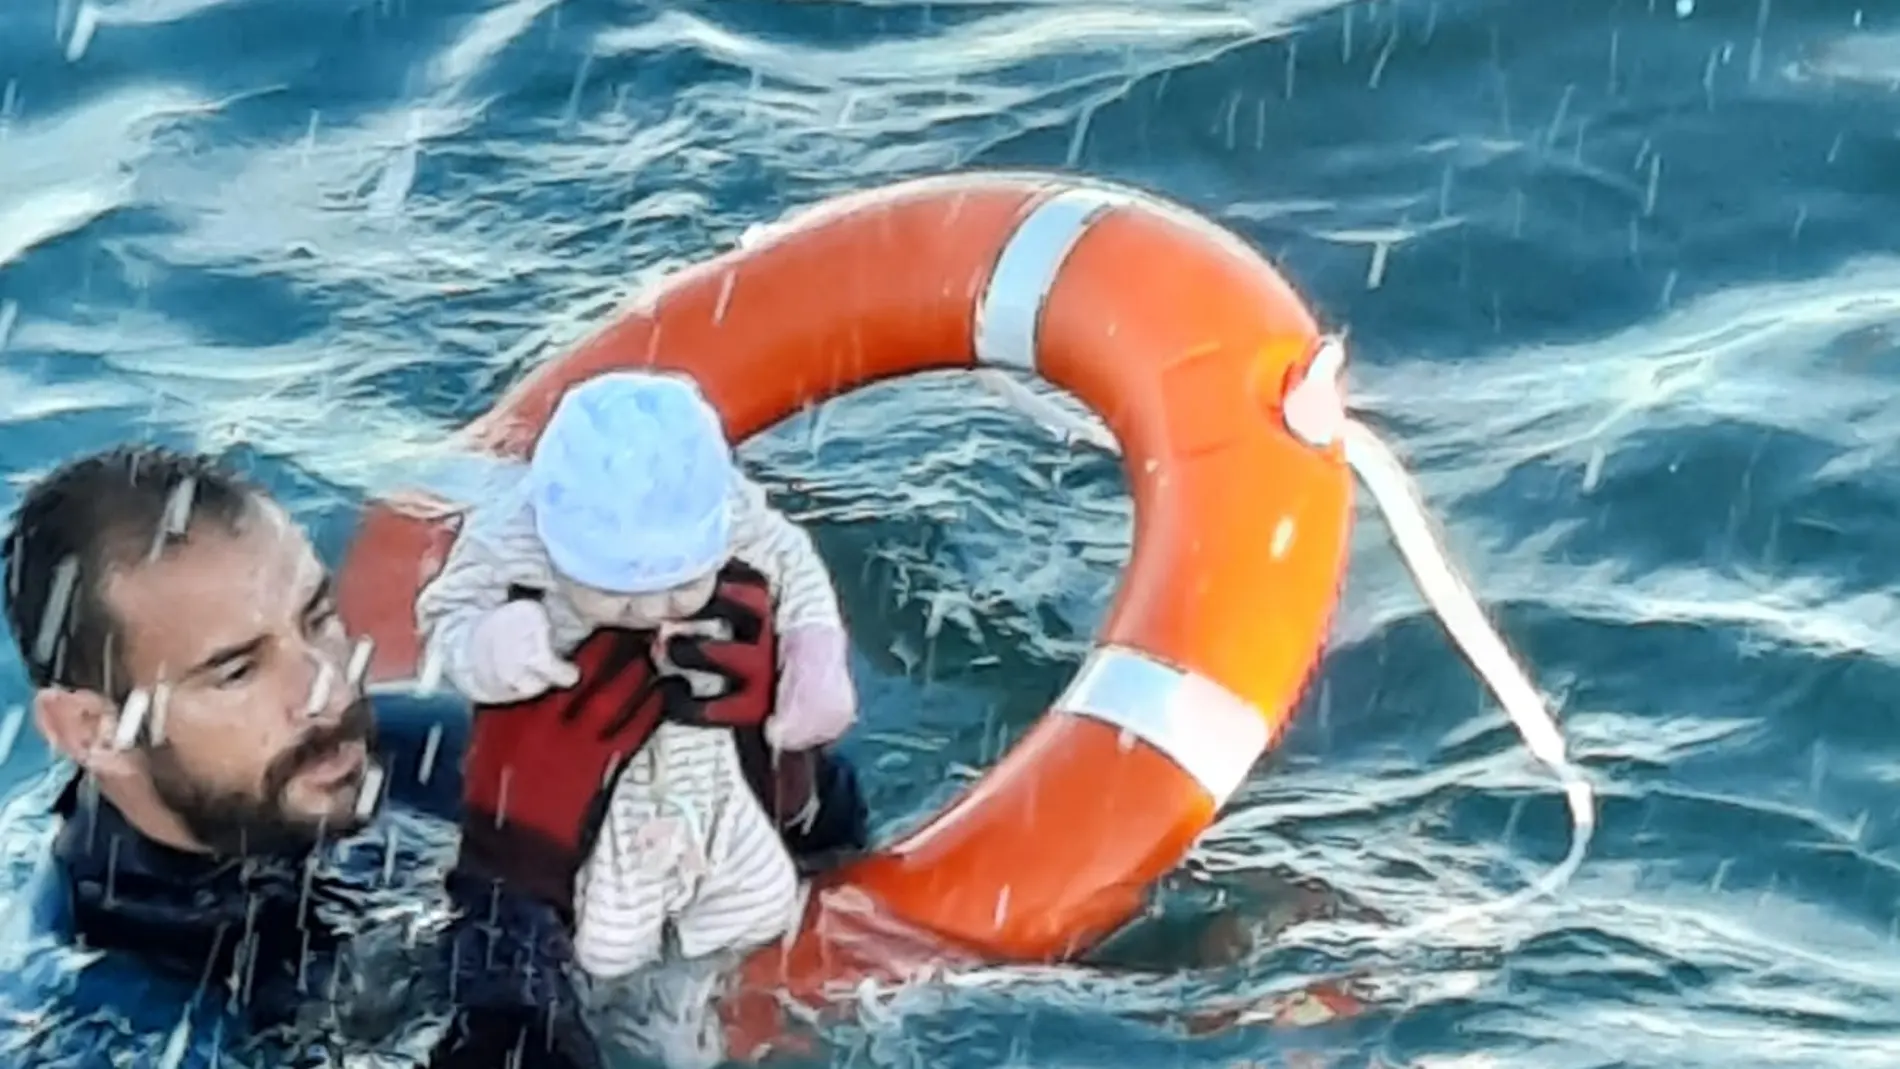 Un agente de la Guardia Civil rescata a un bebé en el mar frente a Ceuta